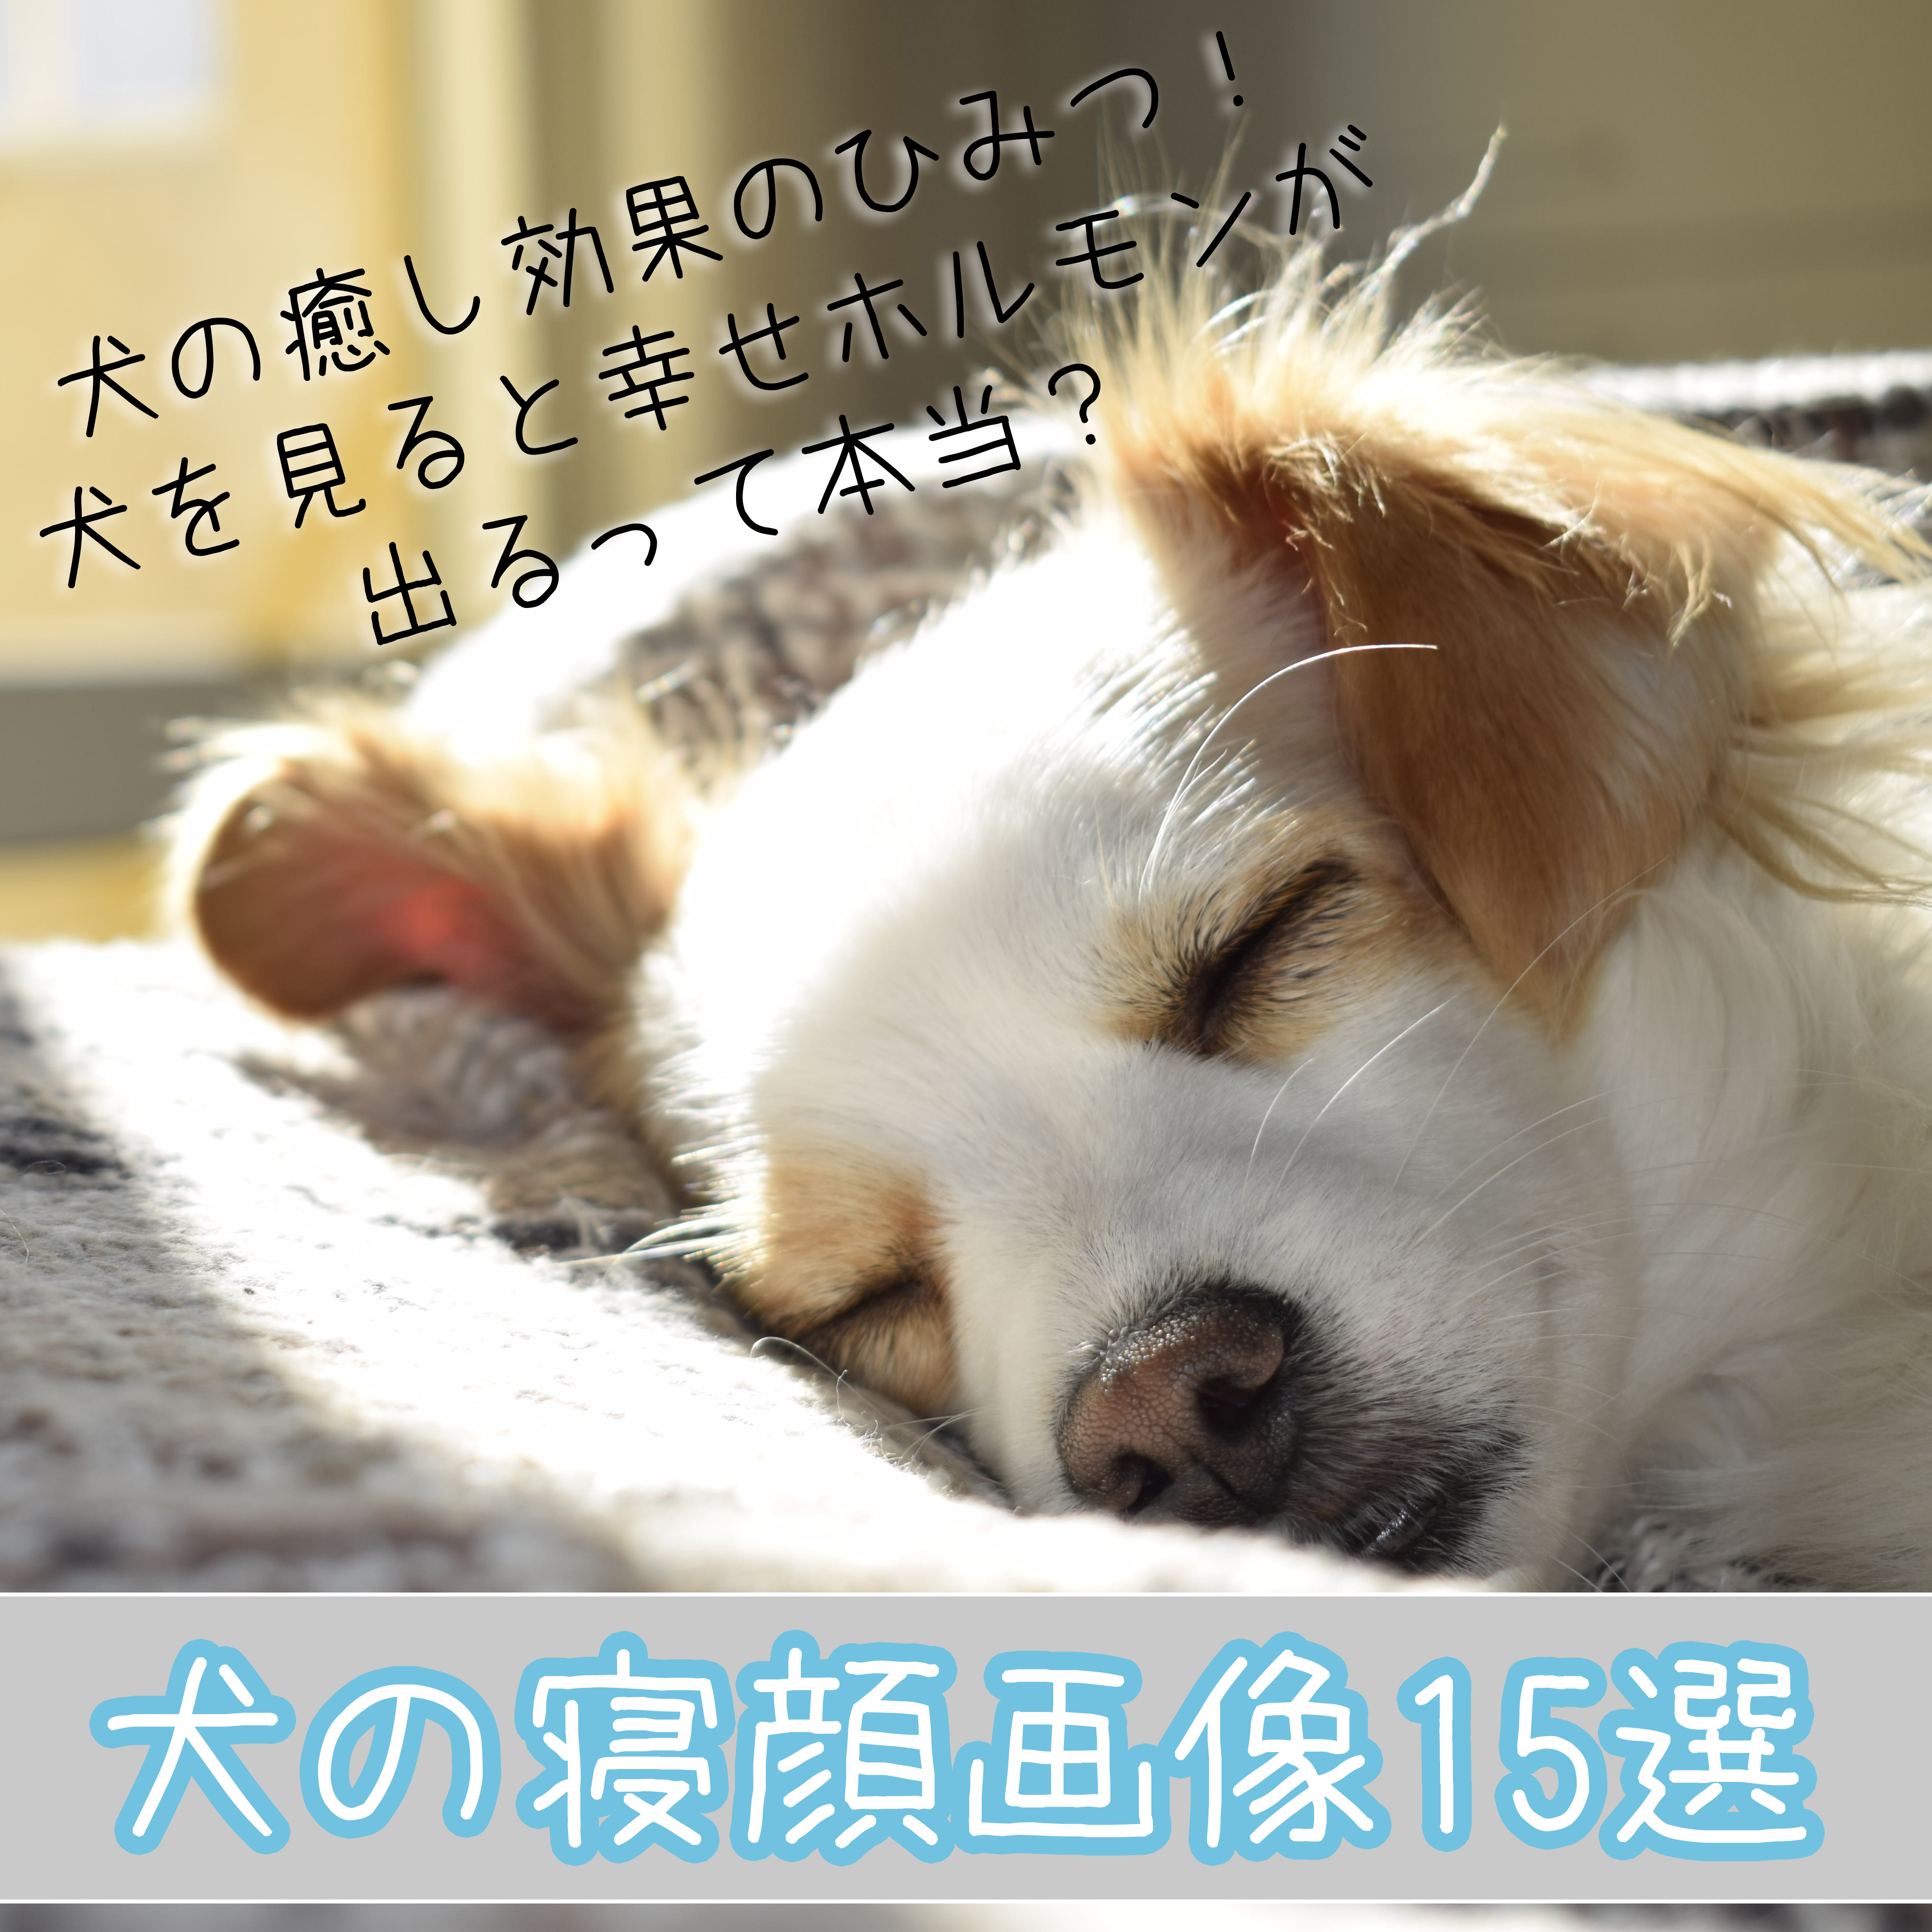 犬の寝顔画像15選 犬の癒し効果のひみつ 犬を見ると幸せホルモンが出るって本当 犬の総合情報サイト ペットスマイルニュースforワンちゃん